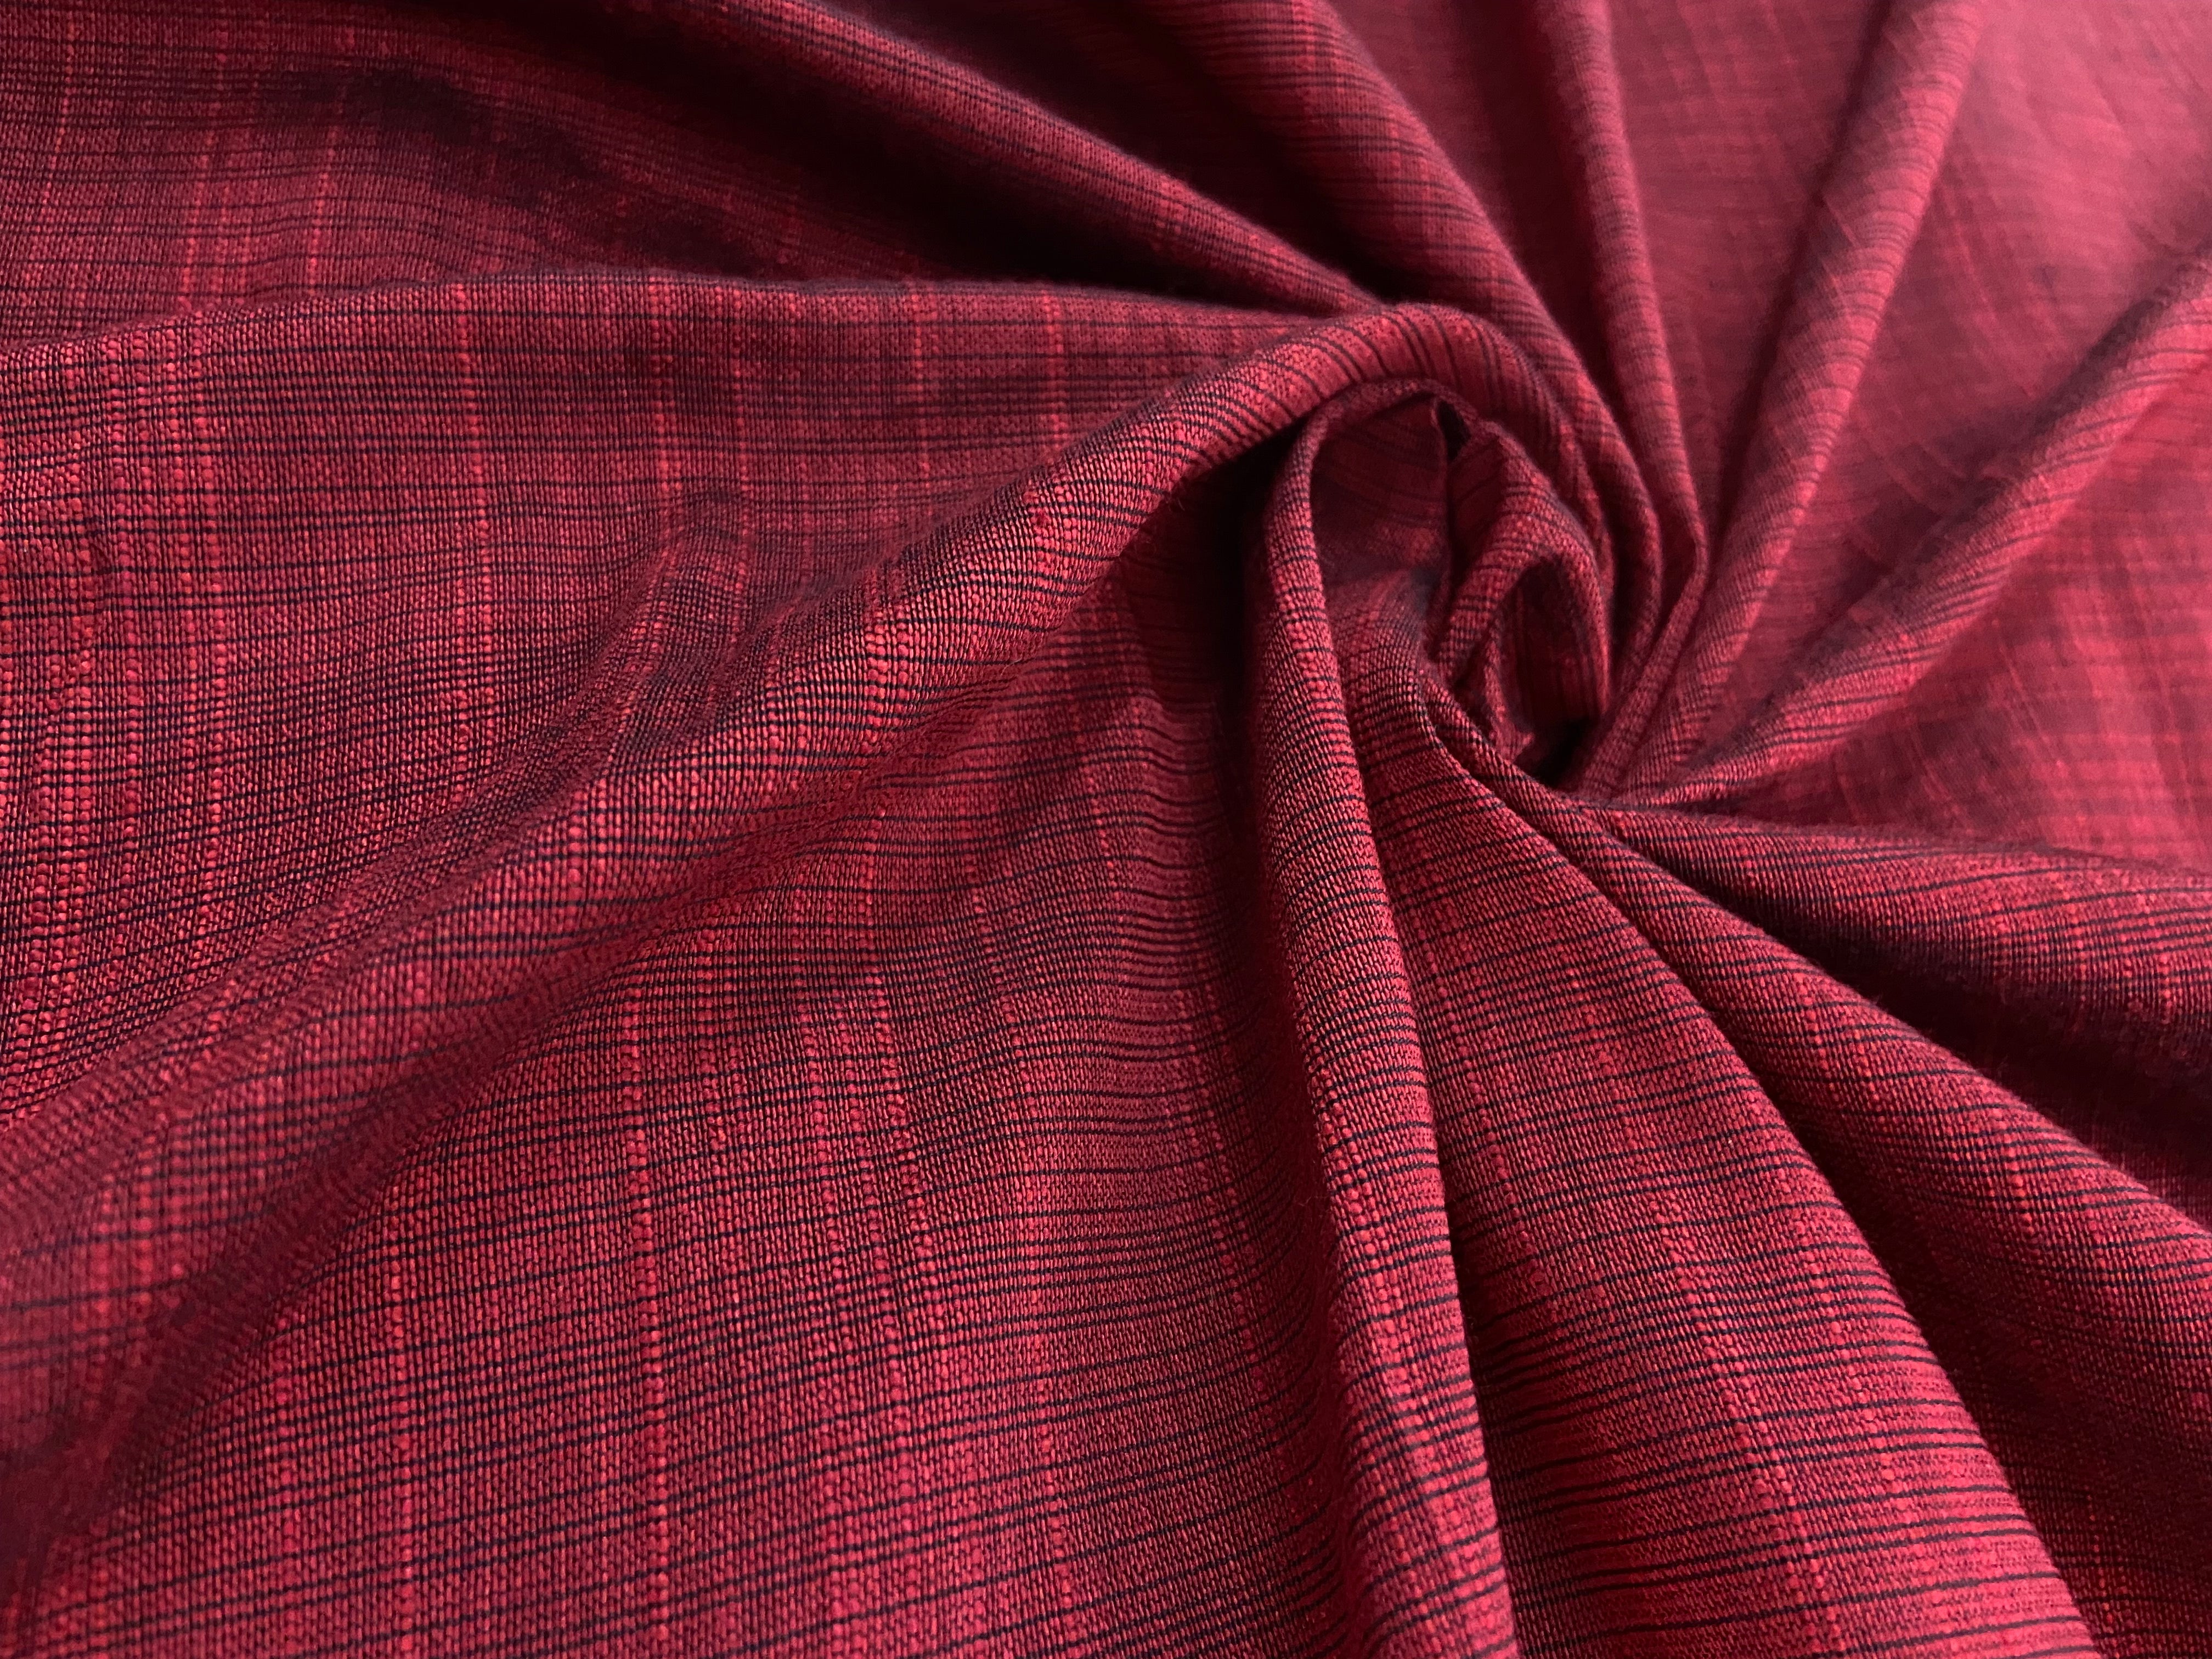 Fabric #005